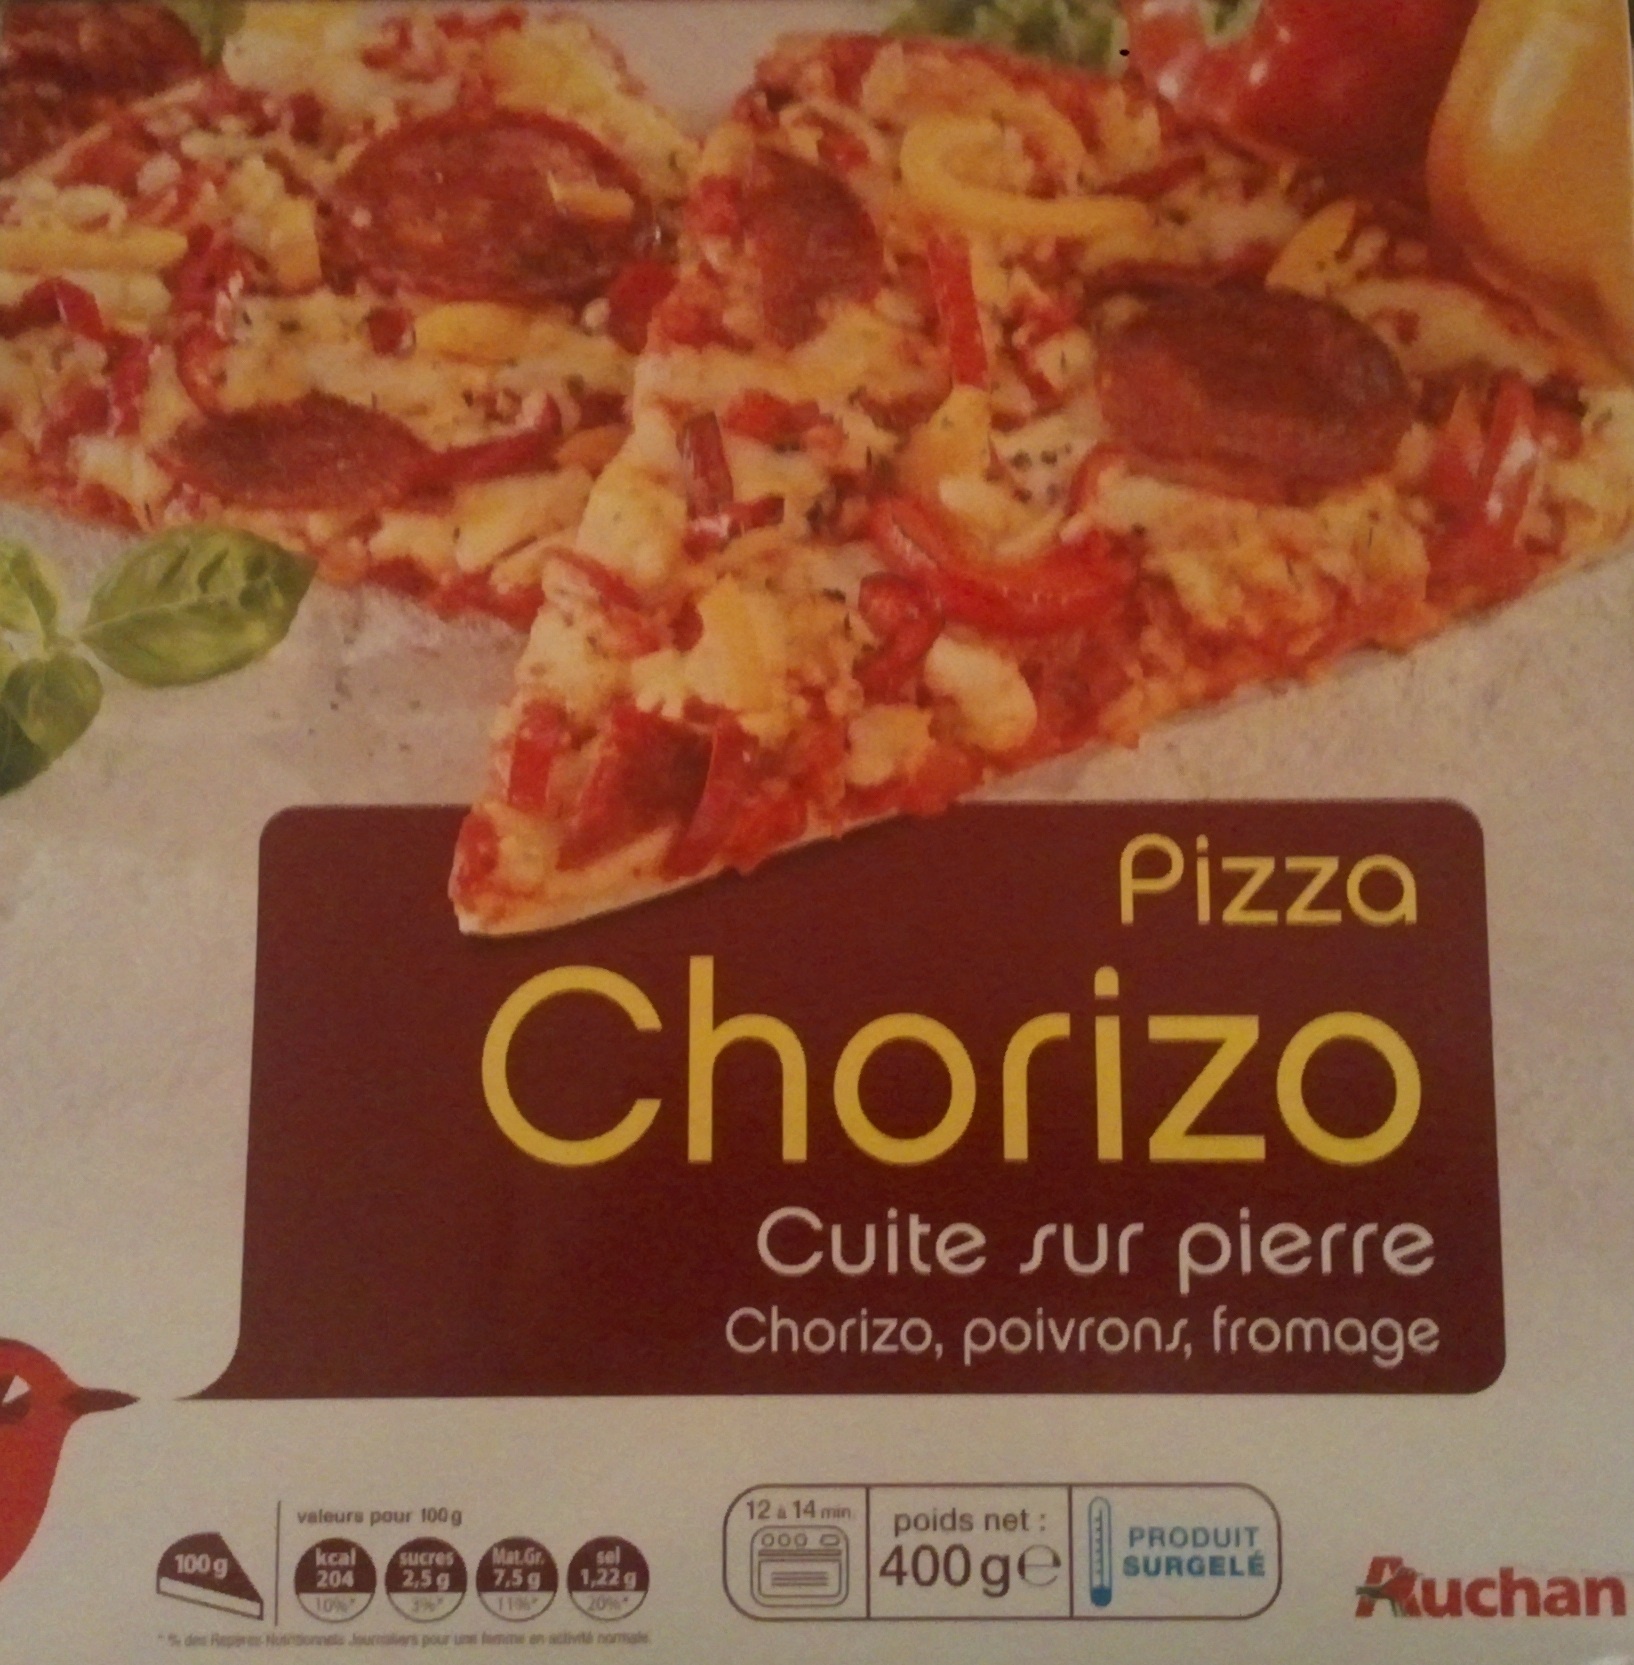 Pizza Chorizo cuite sur pierre - Product - fr